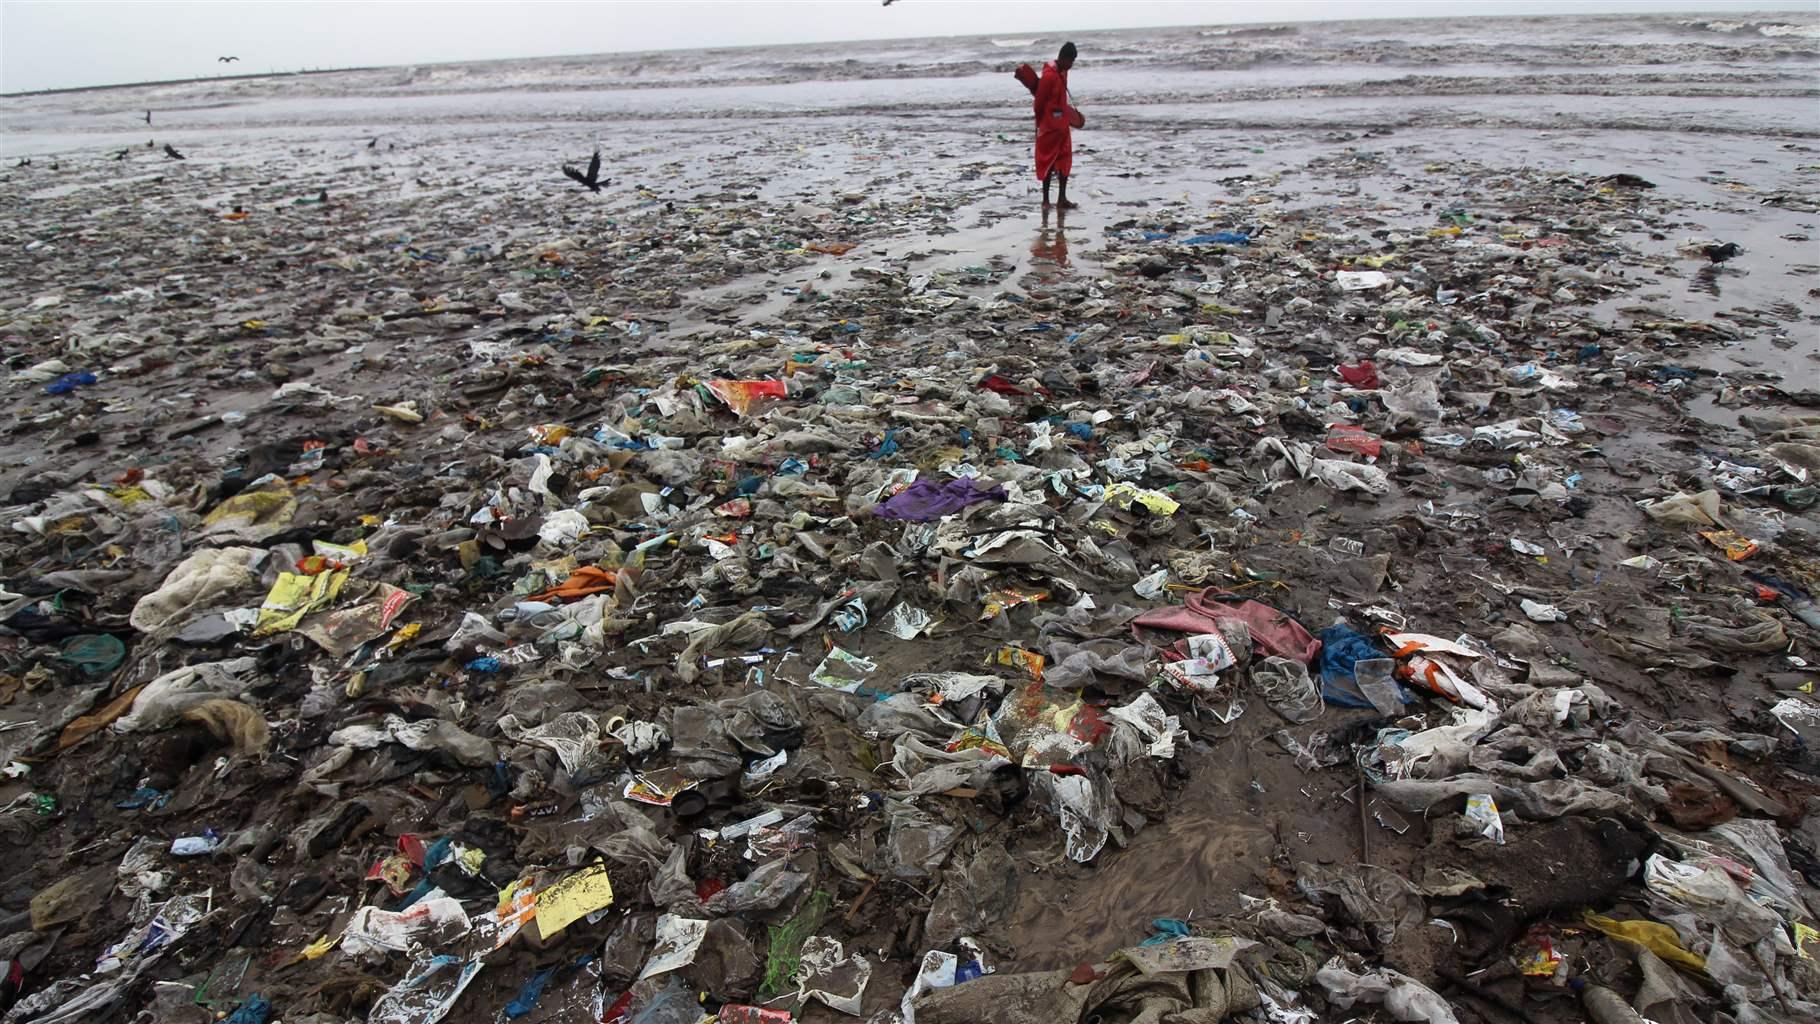 THE OCEAN PLASTICS PROBLEM | Thongchai Thailand